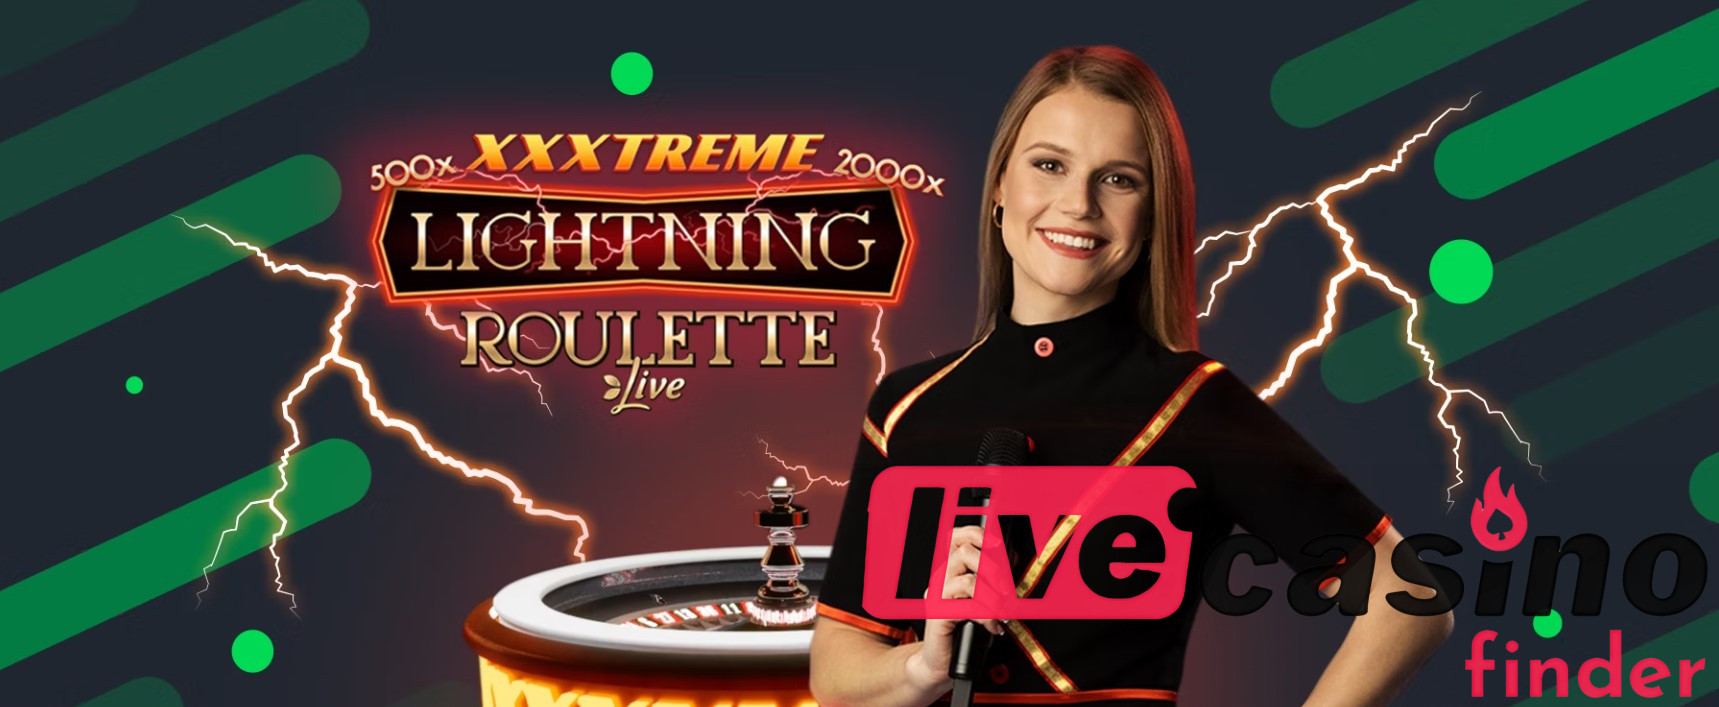 Programvaruleverantörer för XXXtreme Lightning Roulette.